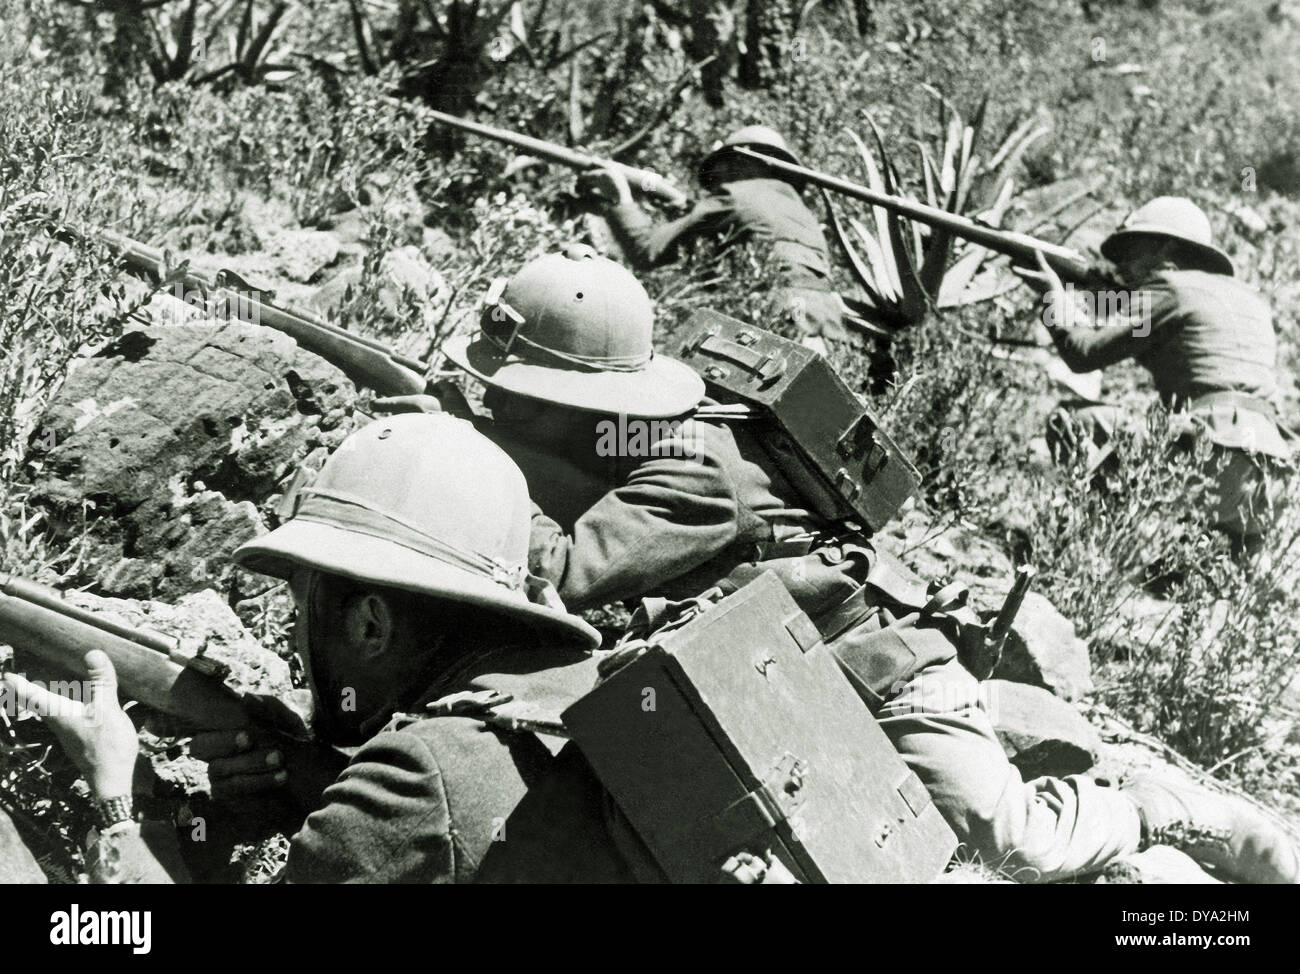 Italienisch-Äthiopischen Krieg Krieg vier italienische Soldaten militärische Waffen Angriff Schlacht italienischen abessinischen Krieg 1935 Äthiopien Afrika Stockfoto